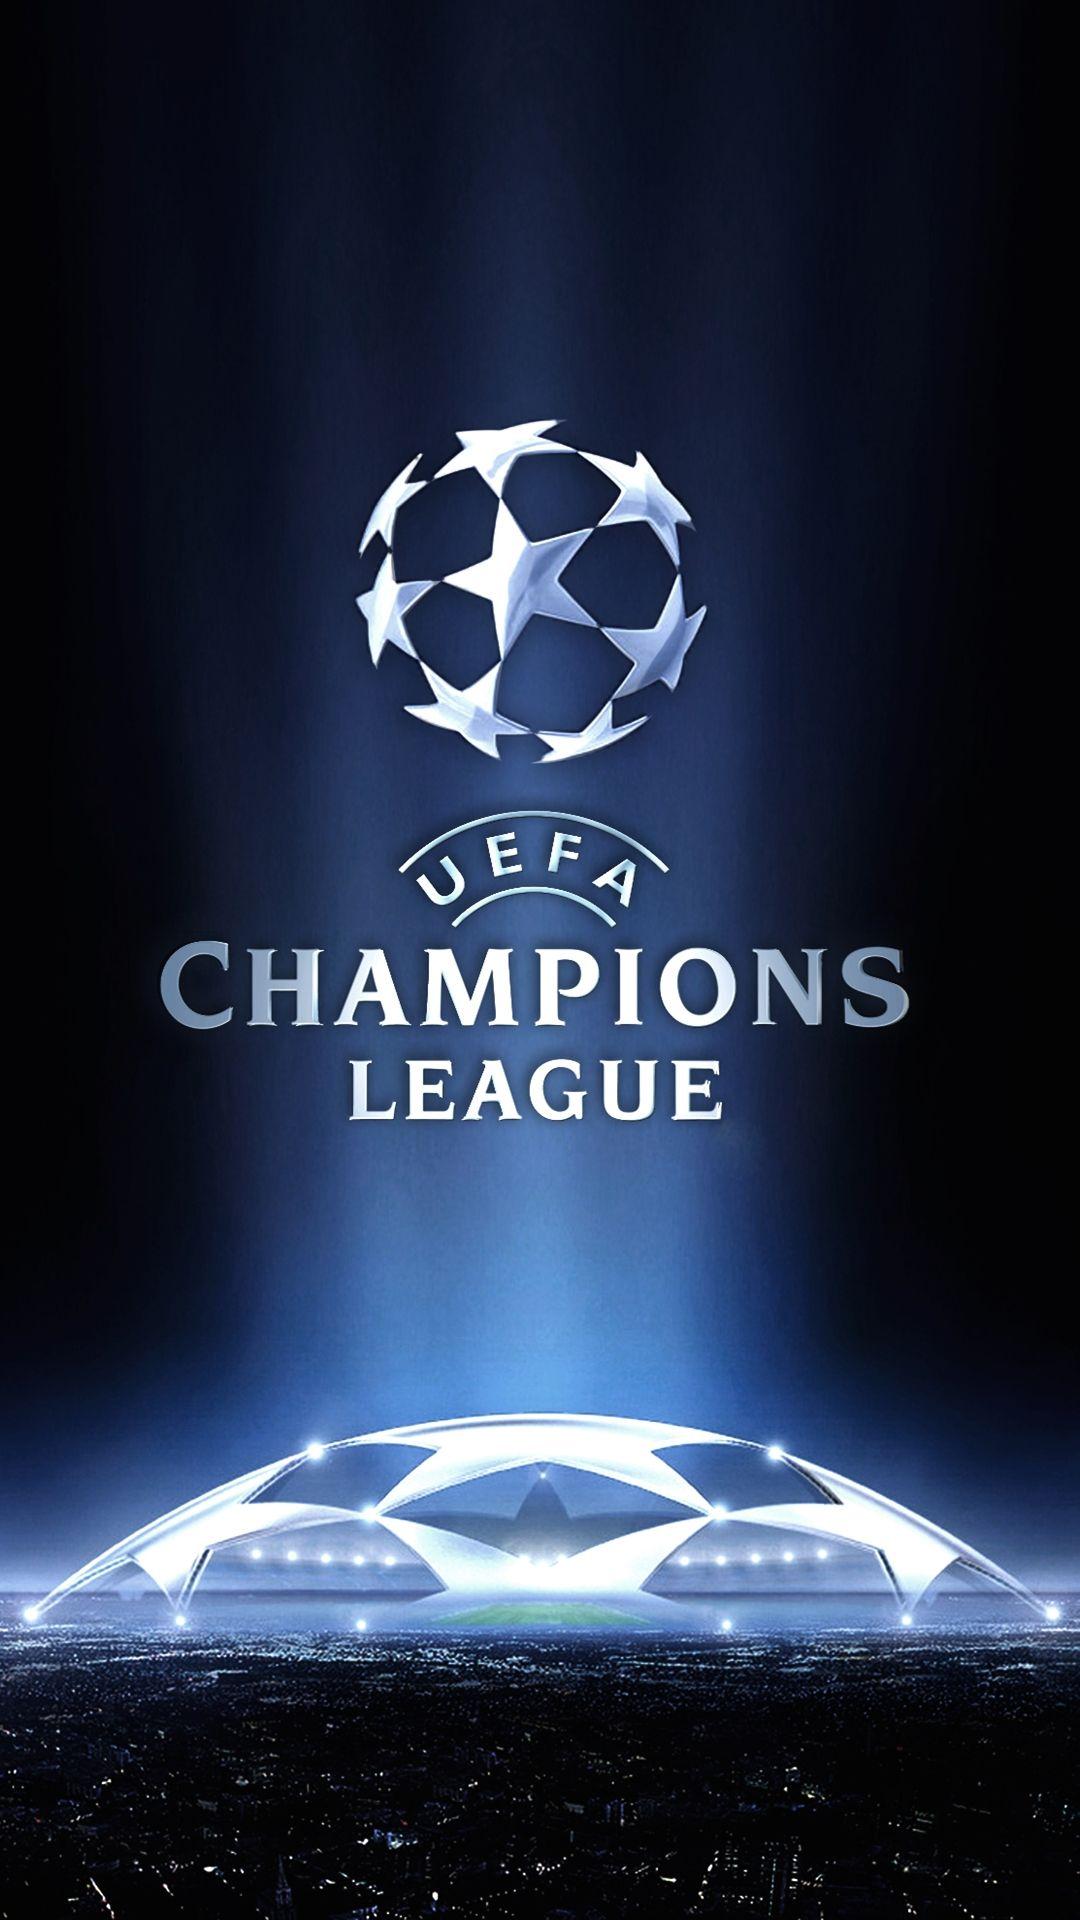 Champions League ideas. champions league, league, champion